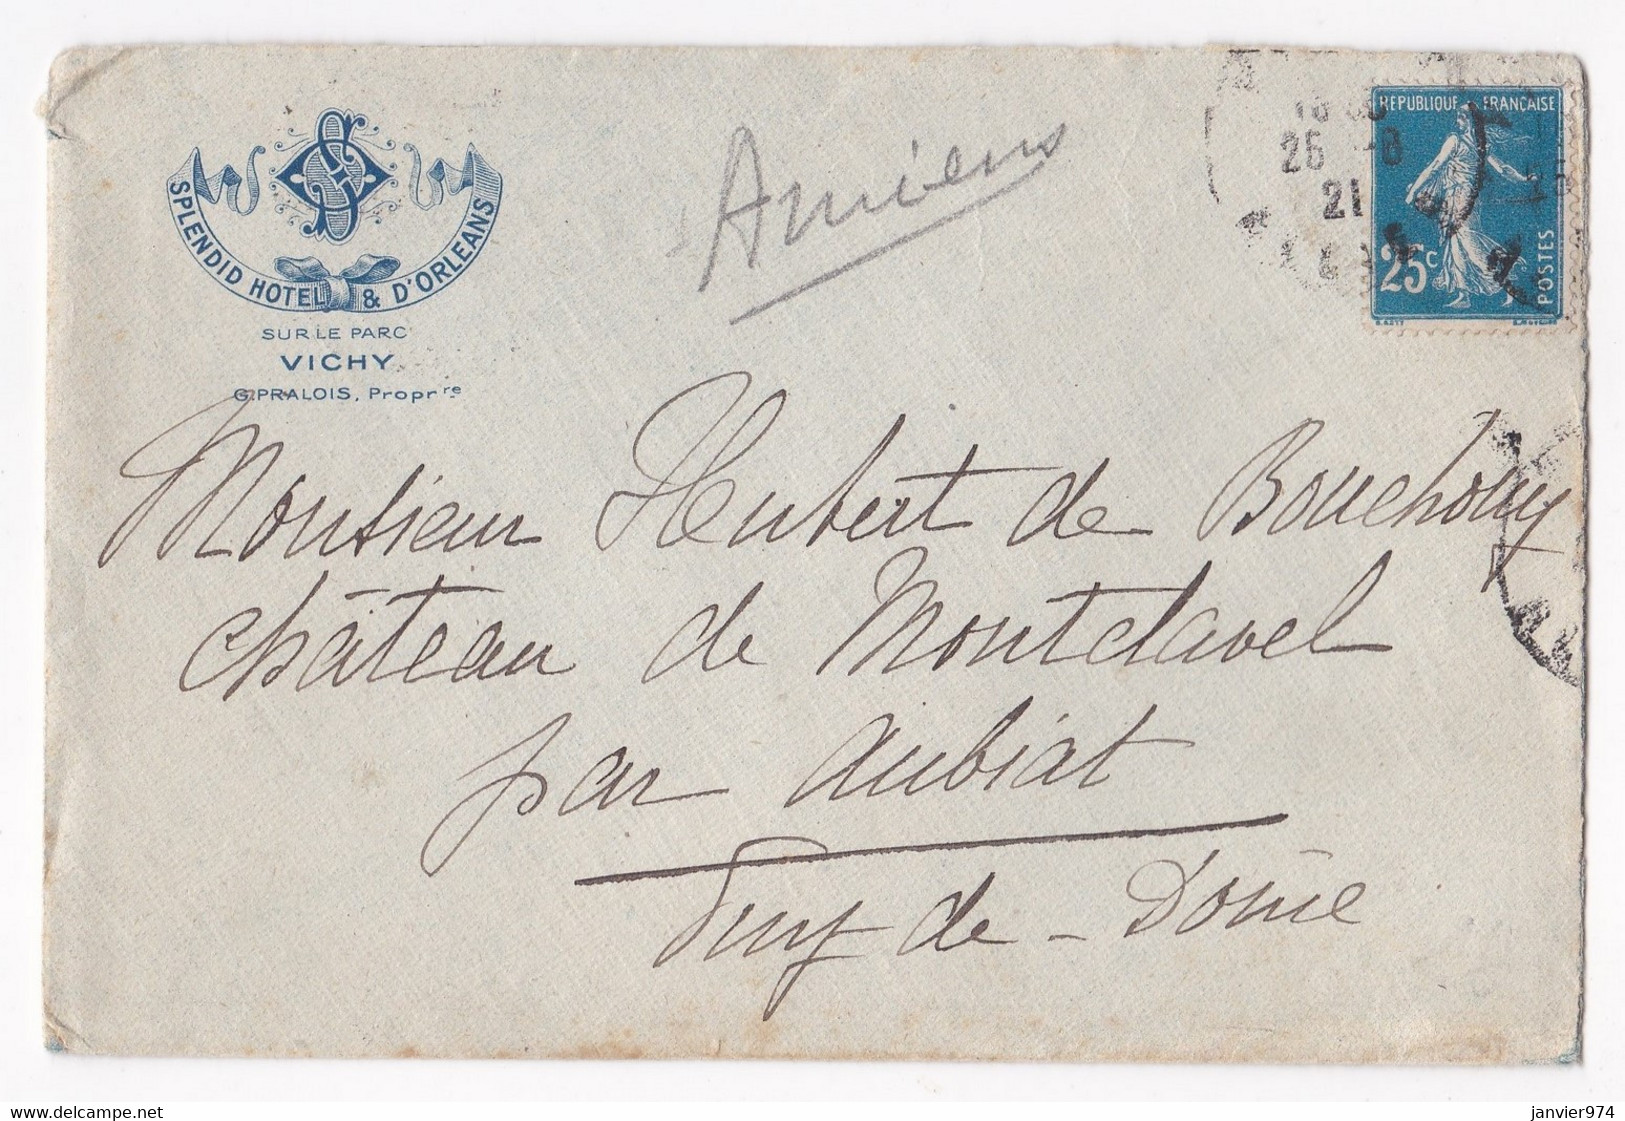 Enveloppe 1921, Splendid Hôtel & D’Orléans Vichy Pour Le Château De Montclavel Aubiat - Cartas & Documentos